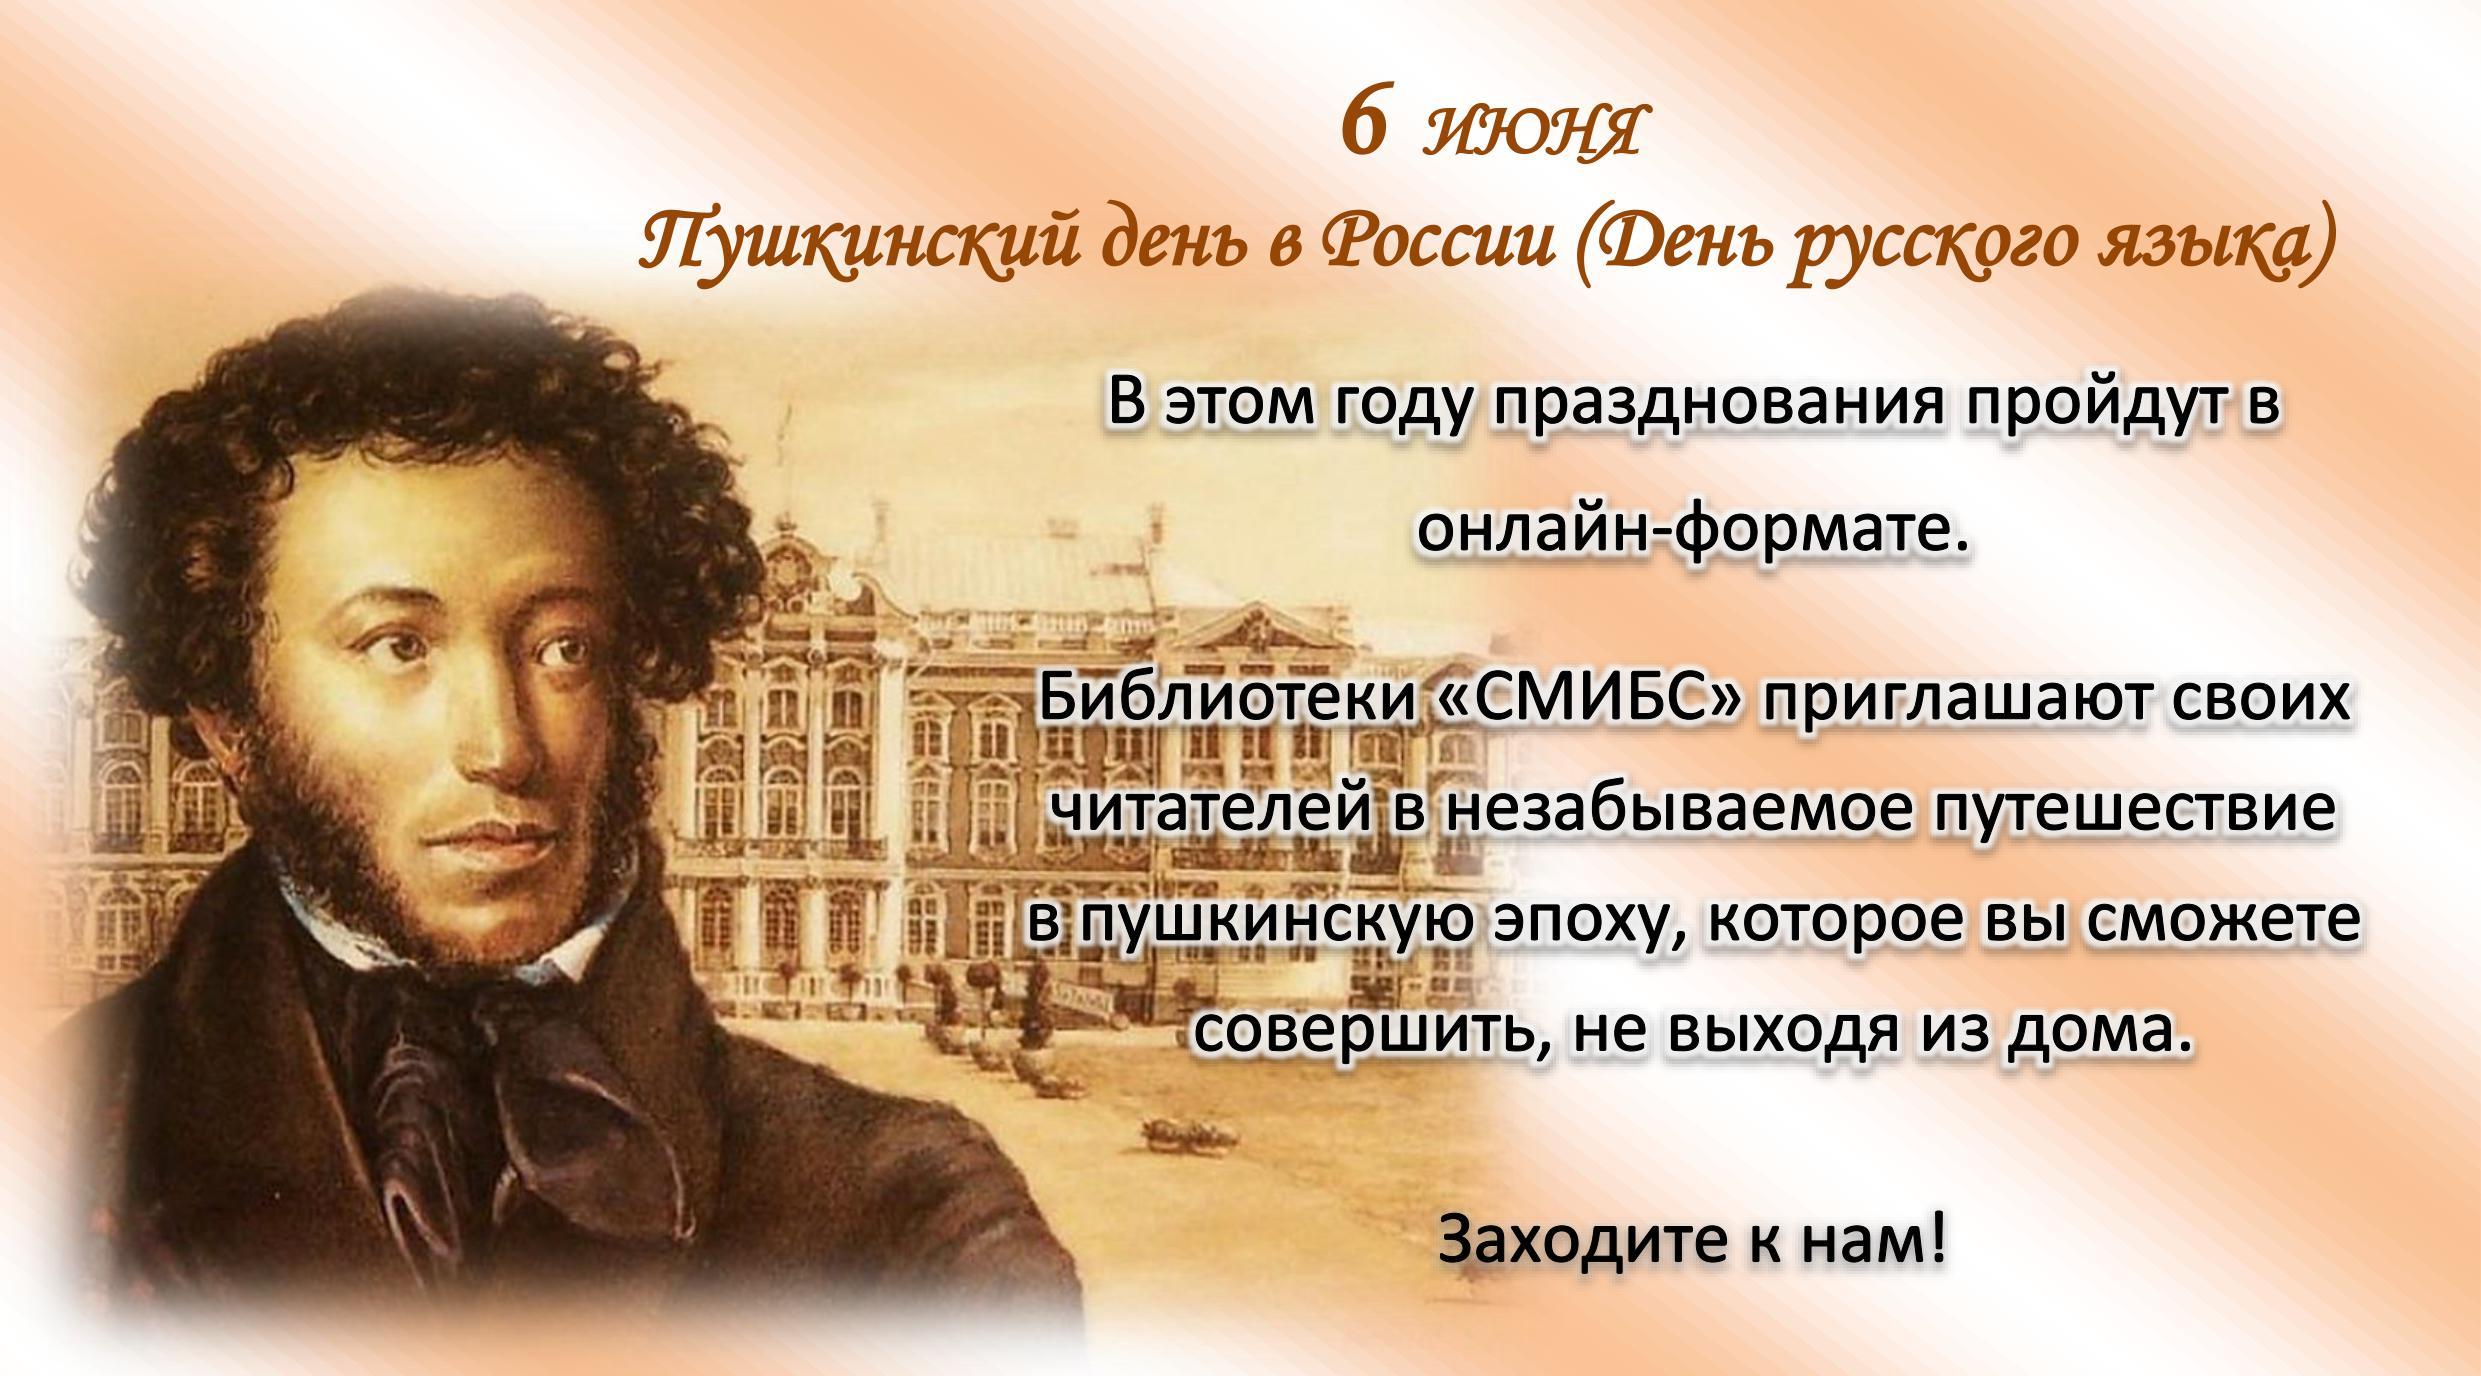 Изменения 6 июня. 6 Июня день Пушкина и день русского языка. 6 Июня день рождения Пушкина Пушкинский день.